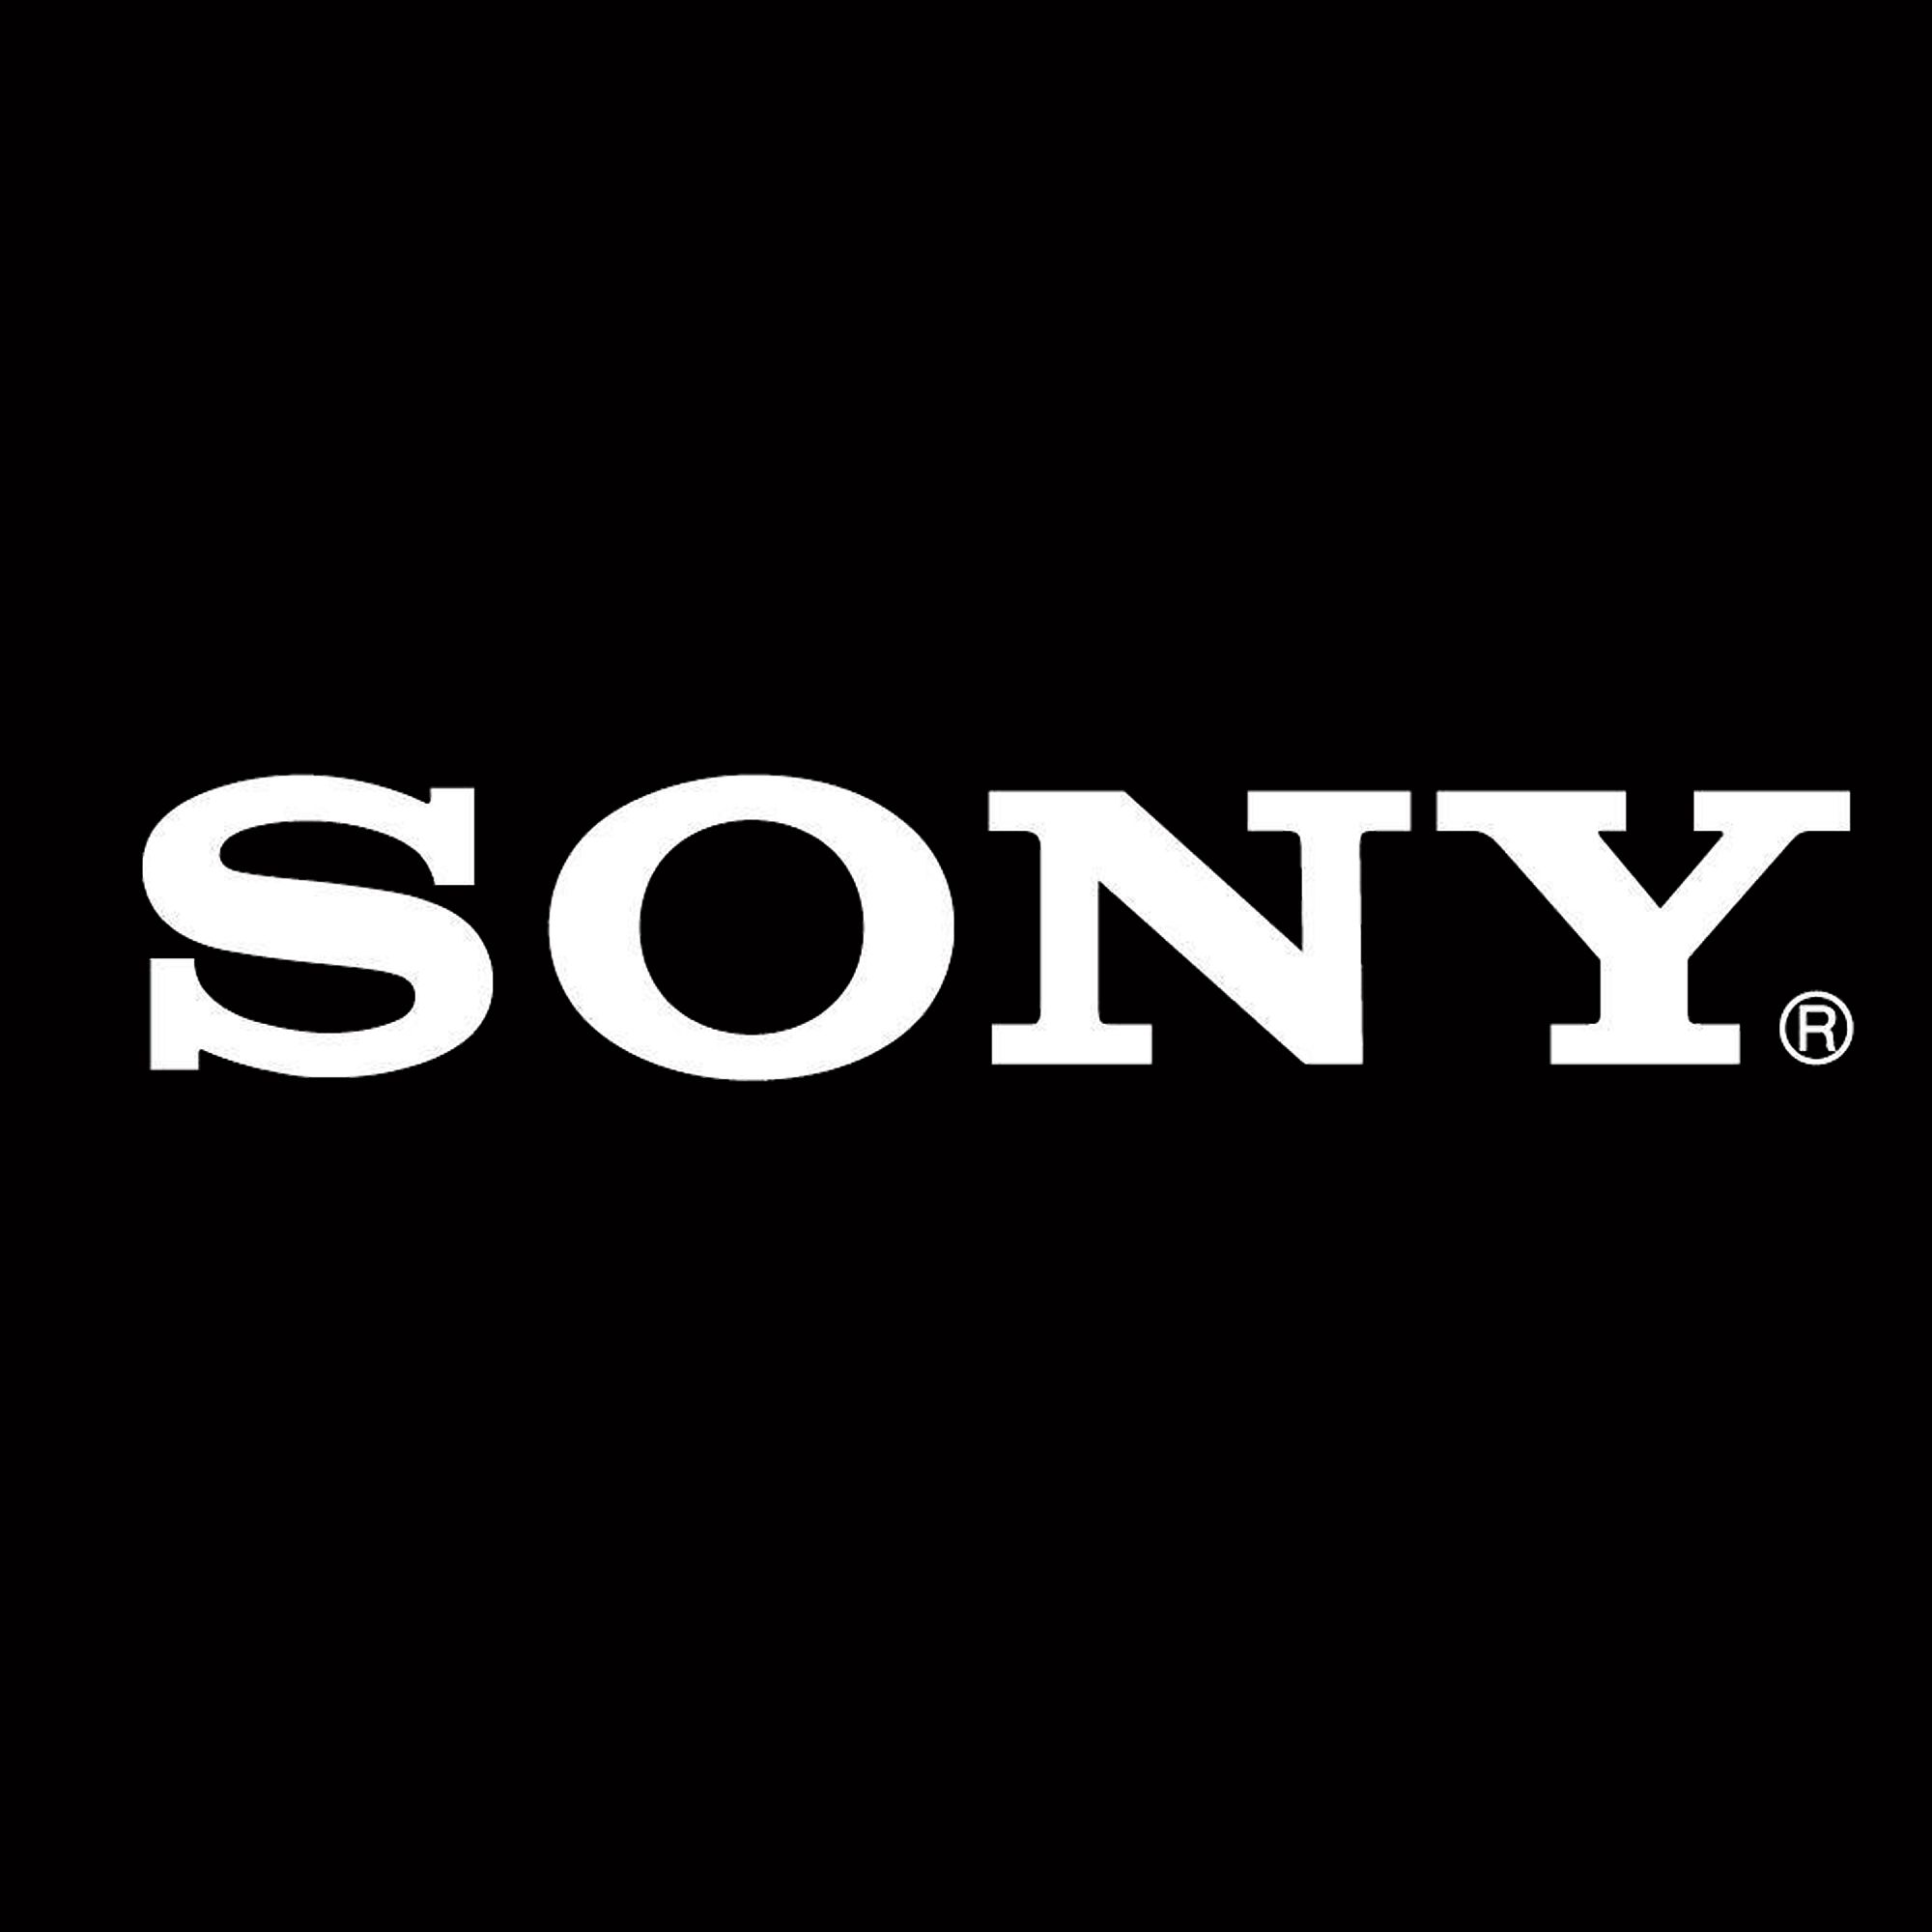 Sony wzbogaca narzędzie TEOS do zarządzania miejscem pracy o nowe elementy: inteligentną automatyzację i integrację czujników IoT